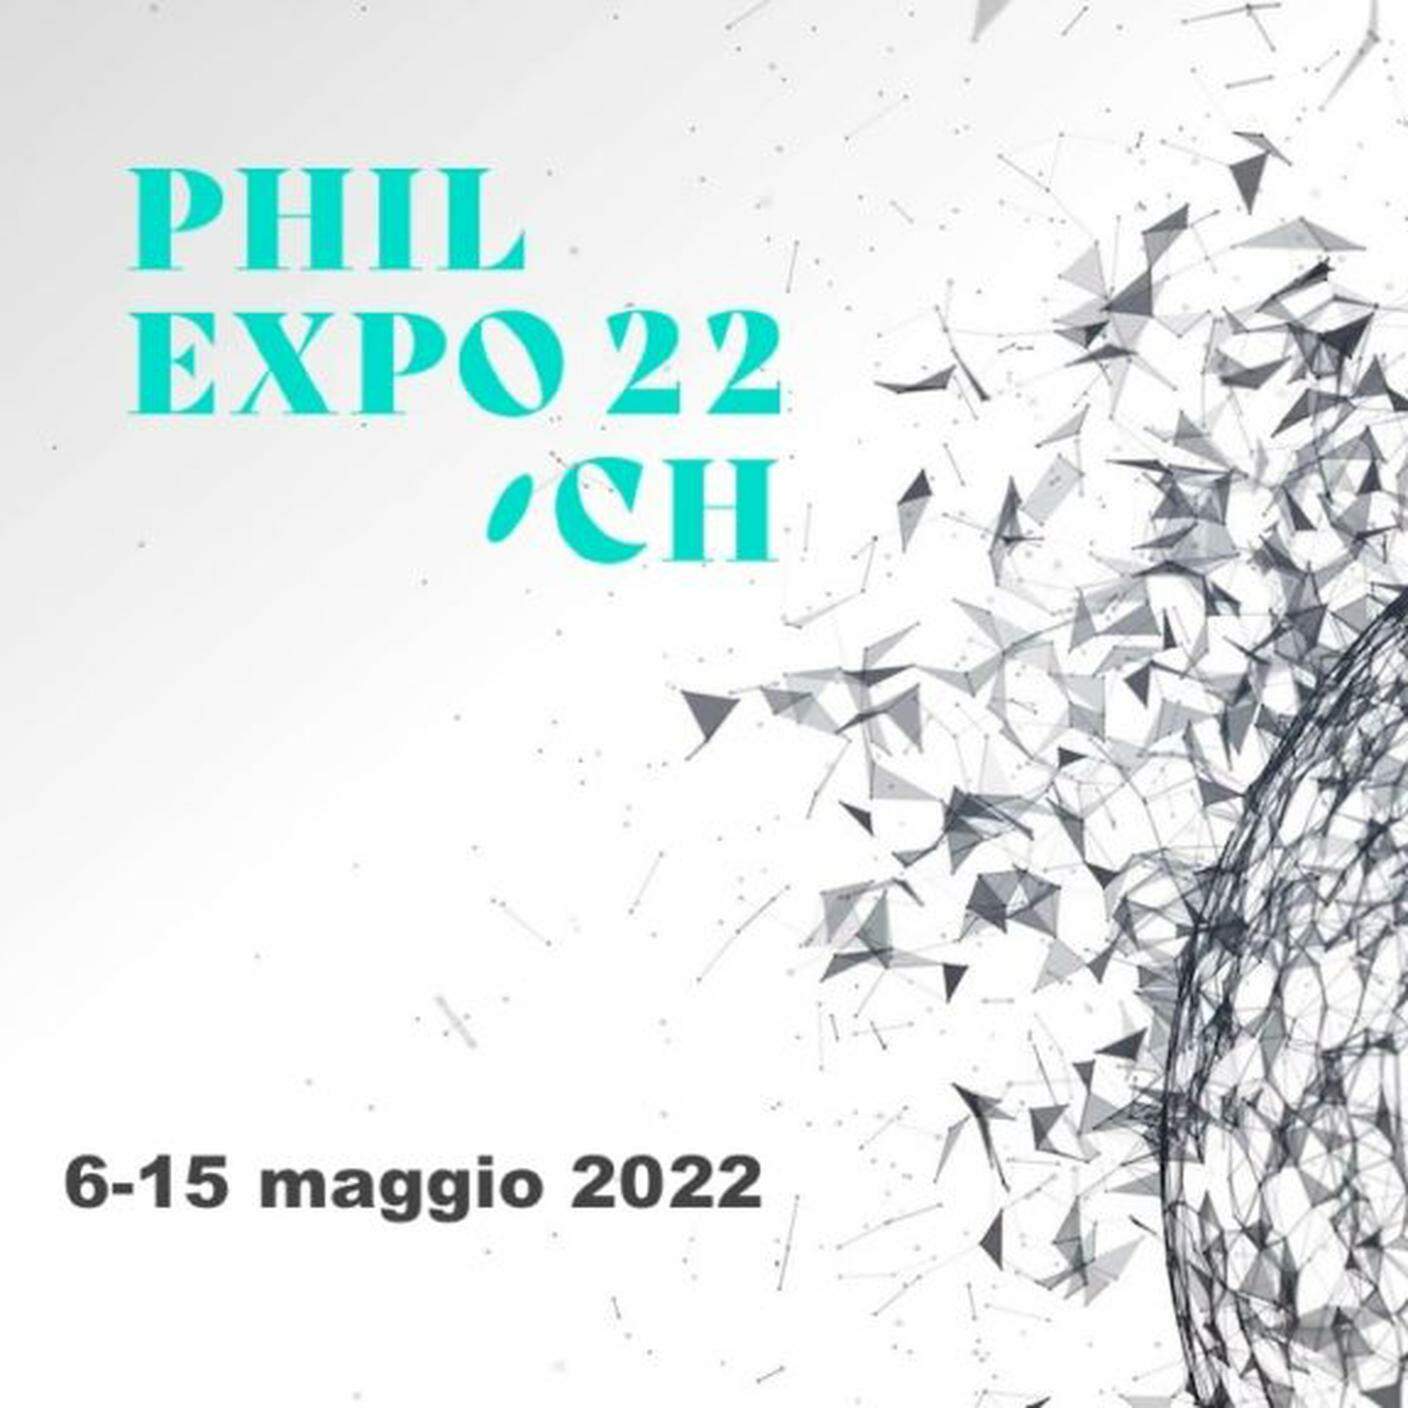 Philexpo 2022 